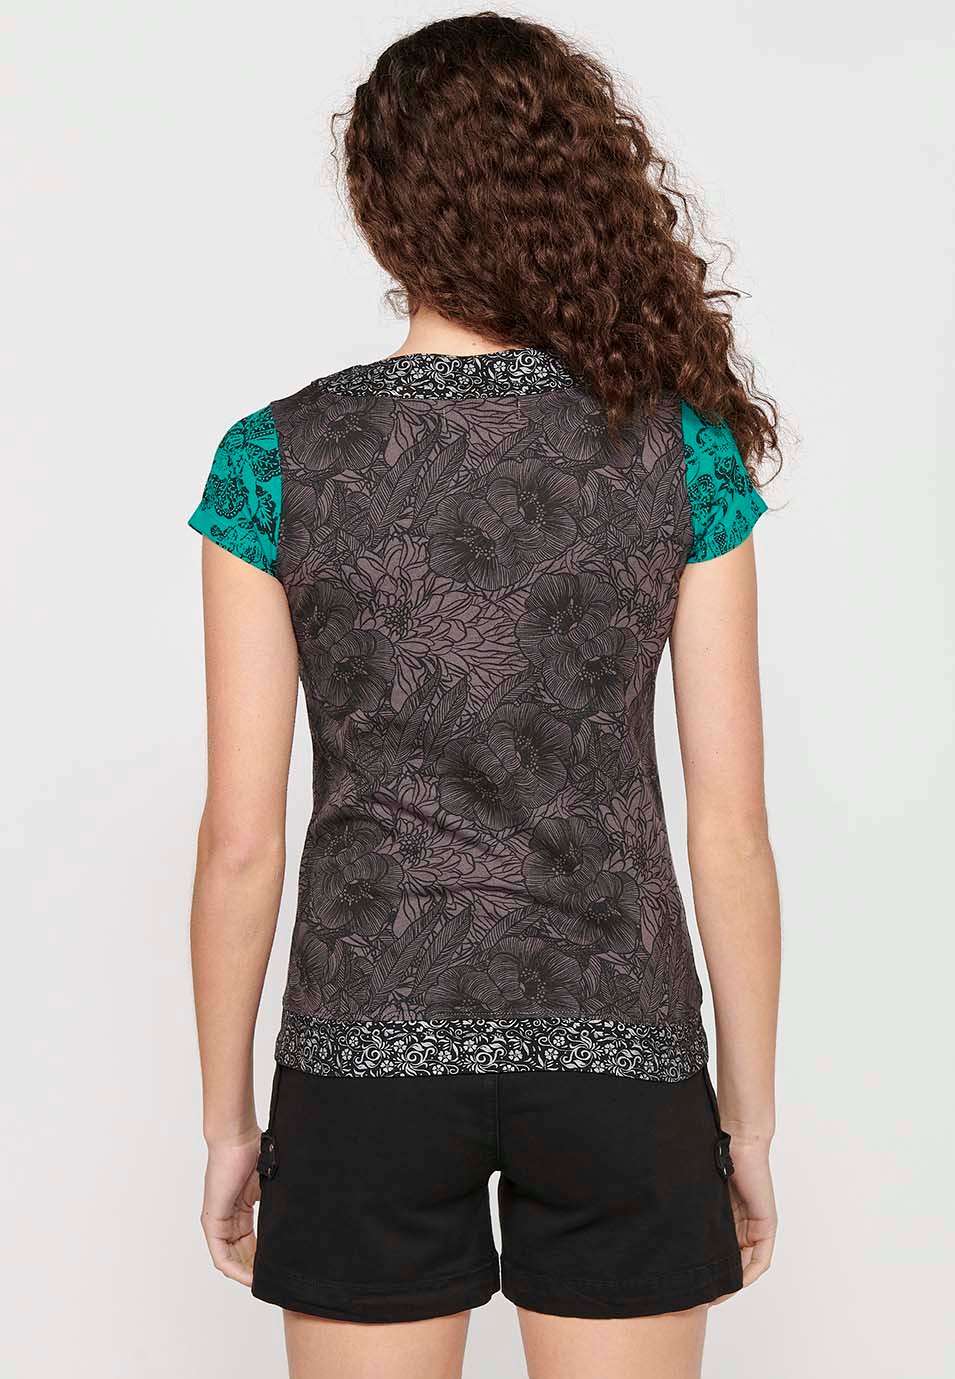 Camiseta de manga corta de Algodón con Cuello pico y Estampado floral de Color Menta para Mujer 1